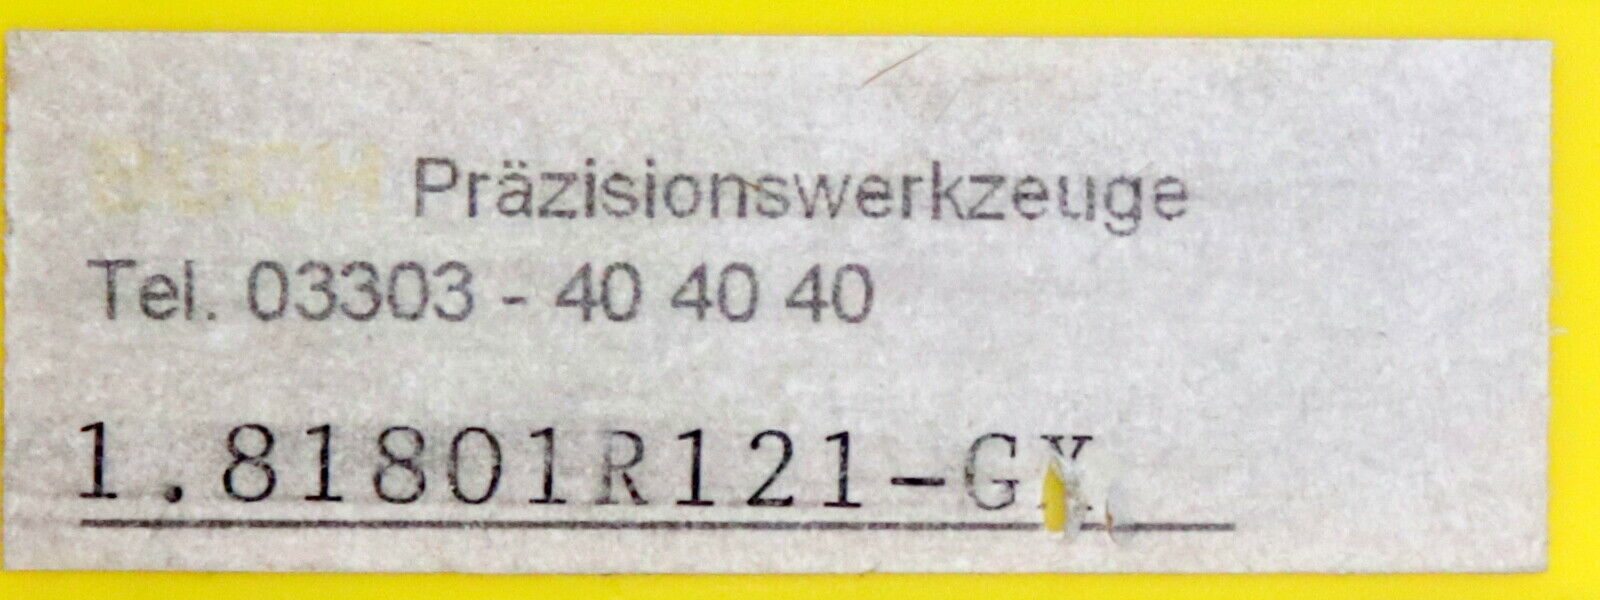 KENNAMETAL 9 Stück Wendeplatten 1.81801R121-GX - unbenutzt